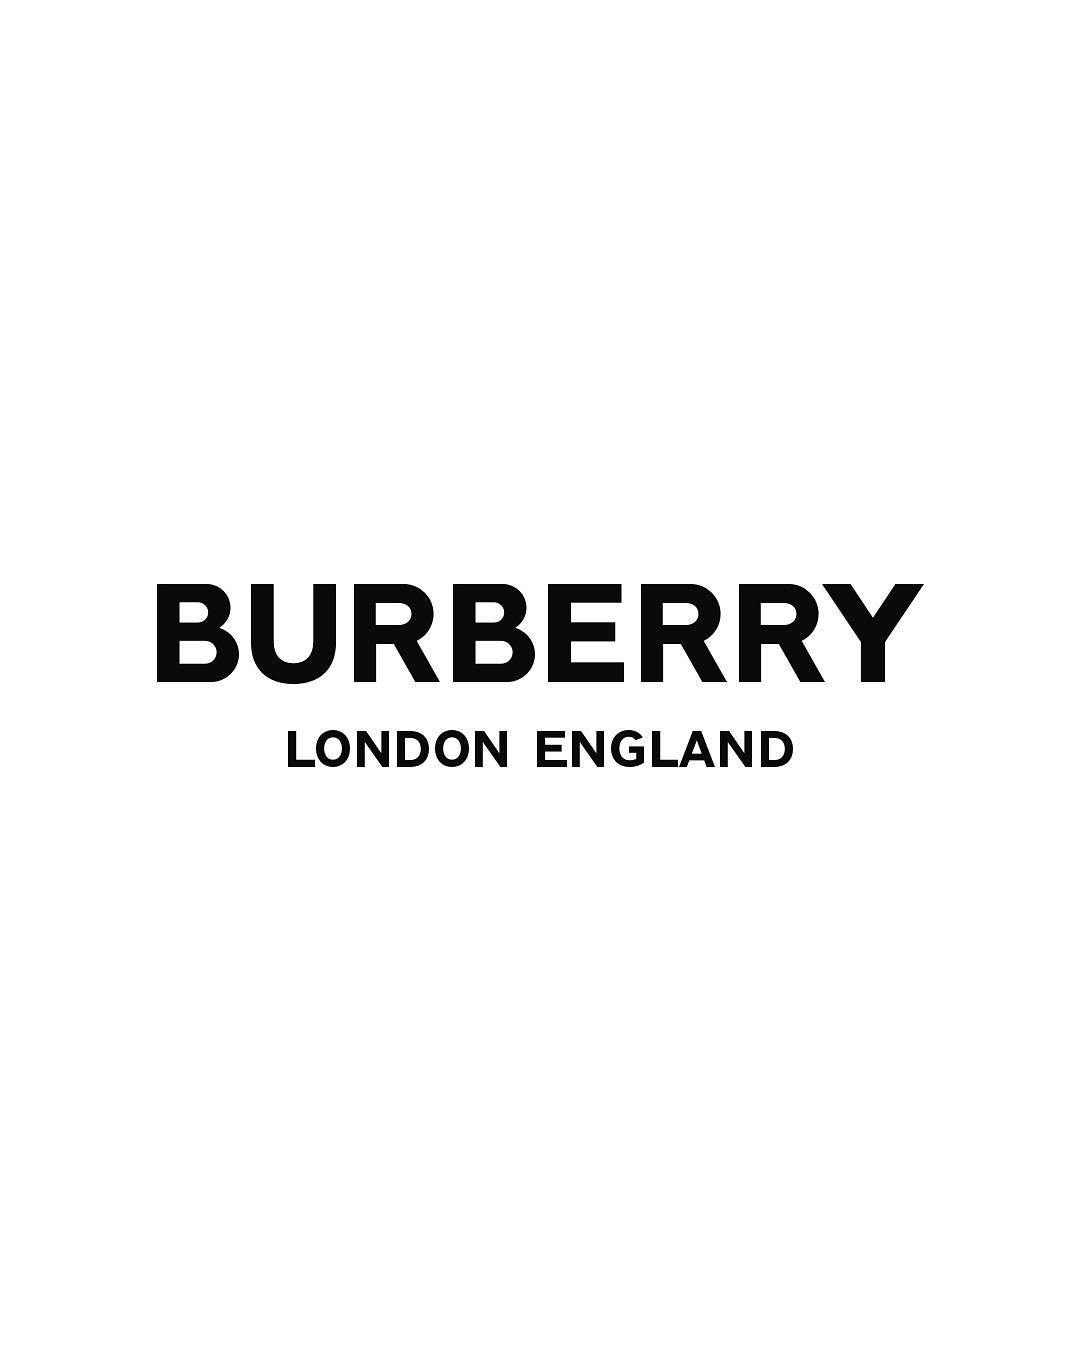 时隔20年更换品牌形象burberry全新logo与monogram图案发布